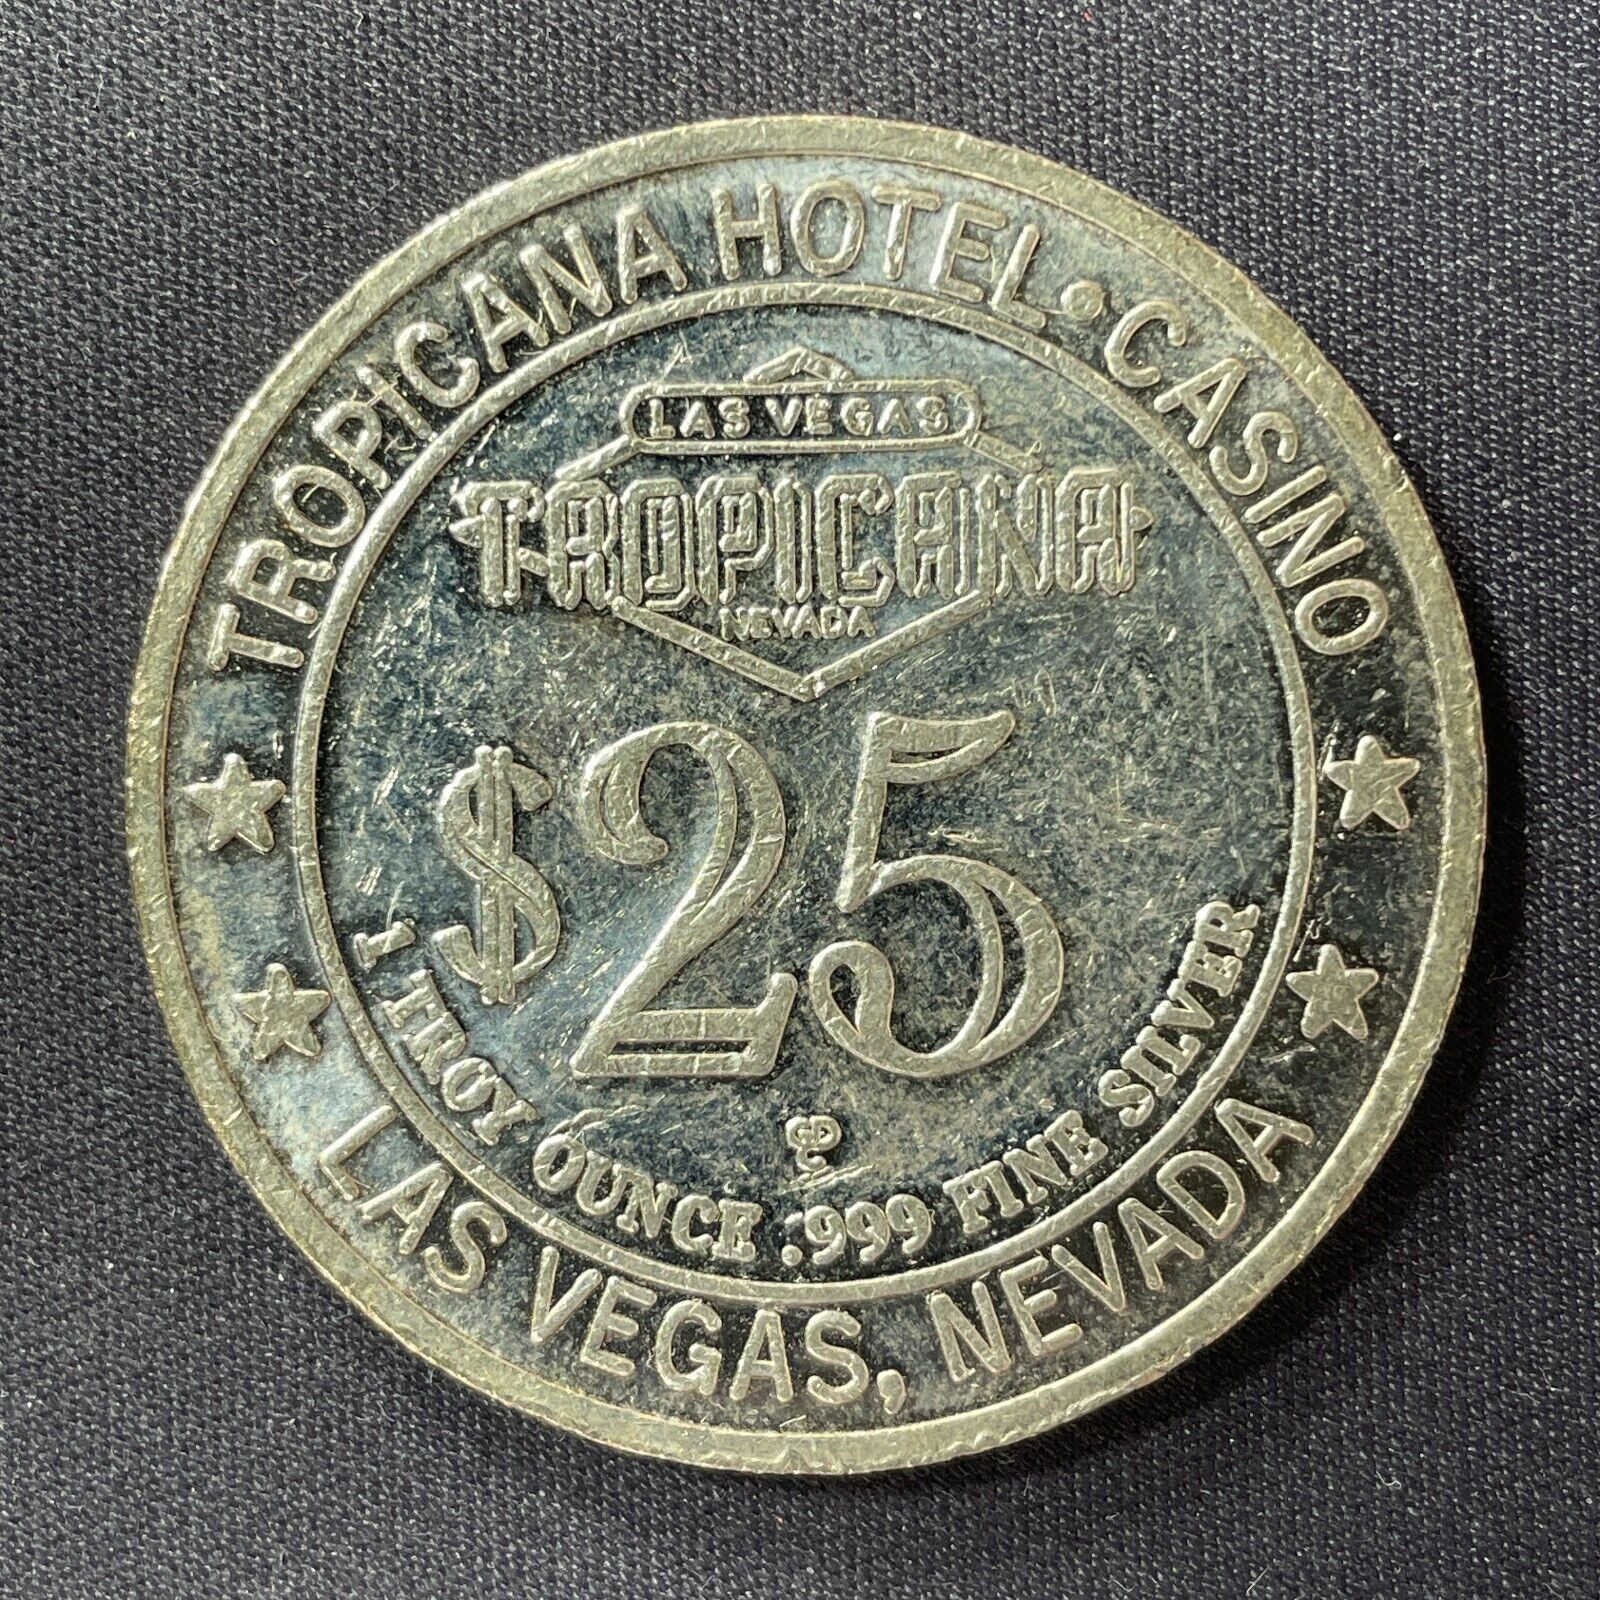 Tropicana Las Vegas $25 casino slot token 1996 obsolete 1 ounce 999 silver SLOT